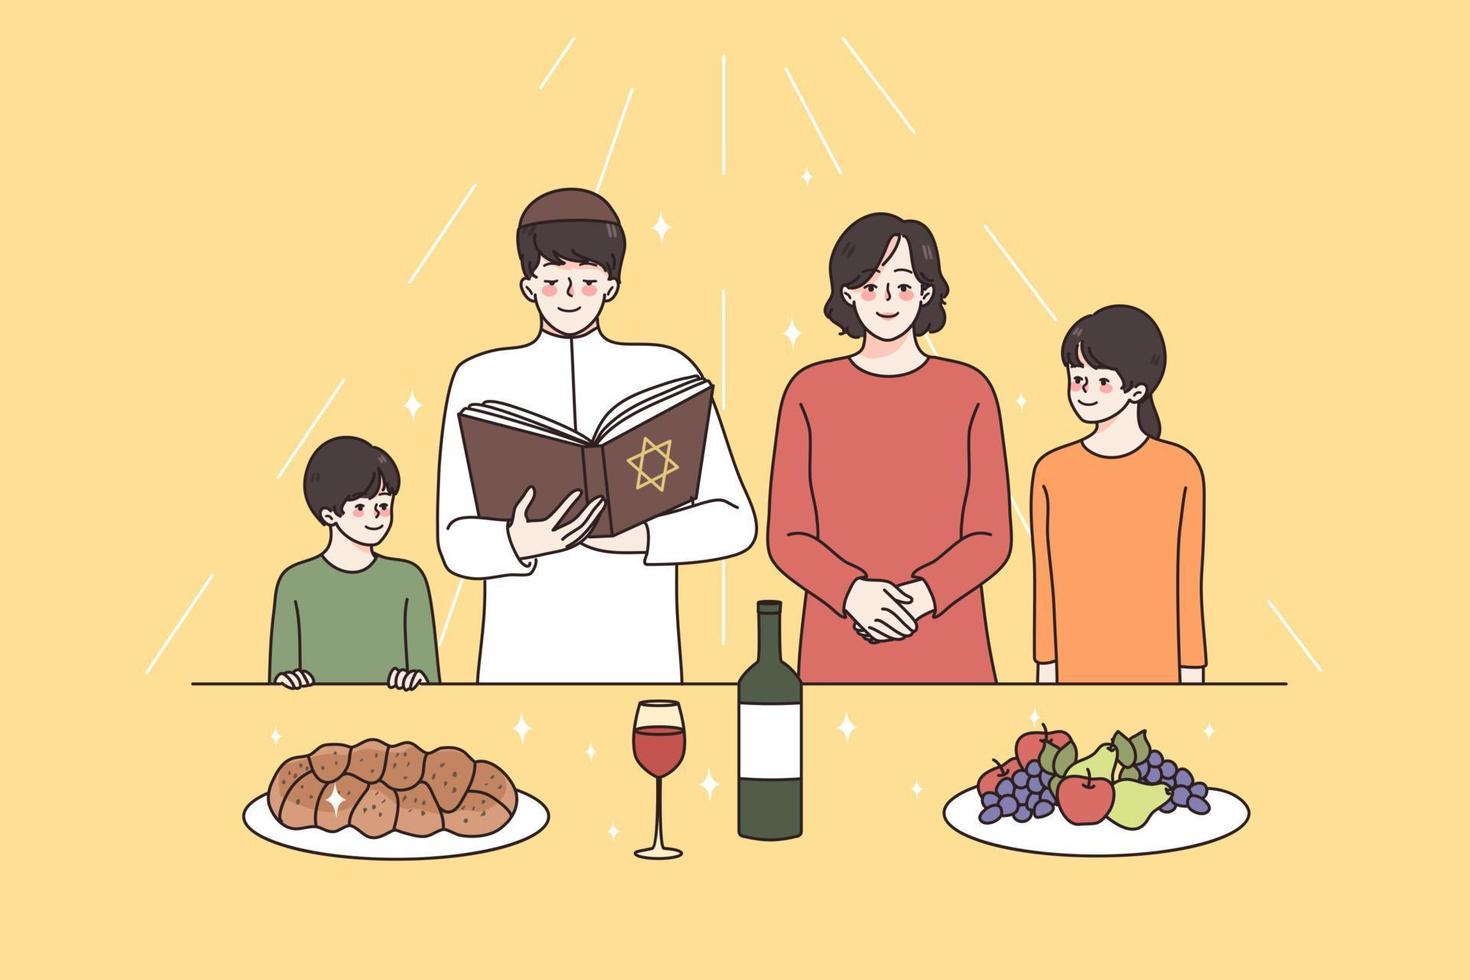 religiös utbildning och andlighet begrepp. jude familj med barn stående med religion bok bön- Allt tillsammans innan måltid vektor illustration